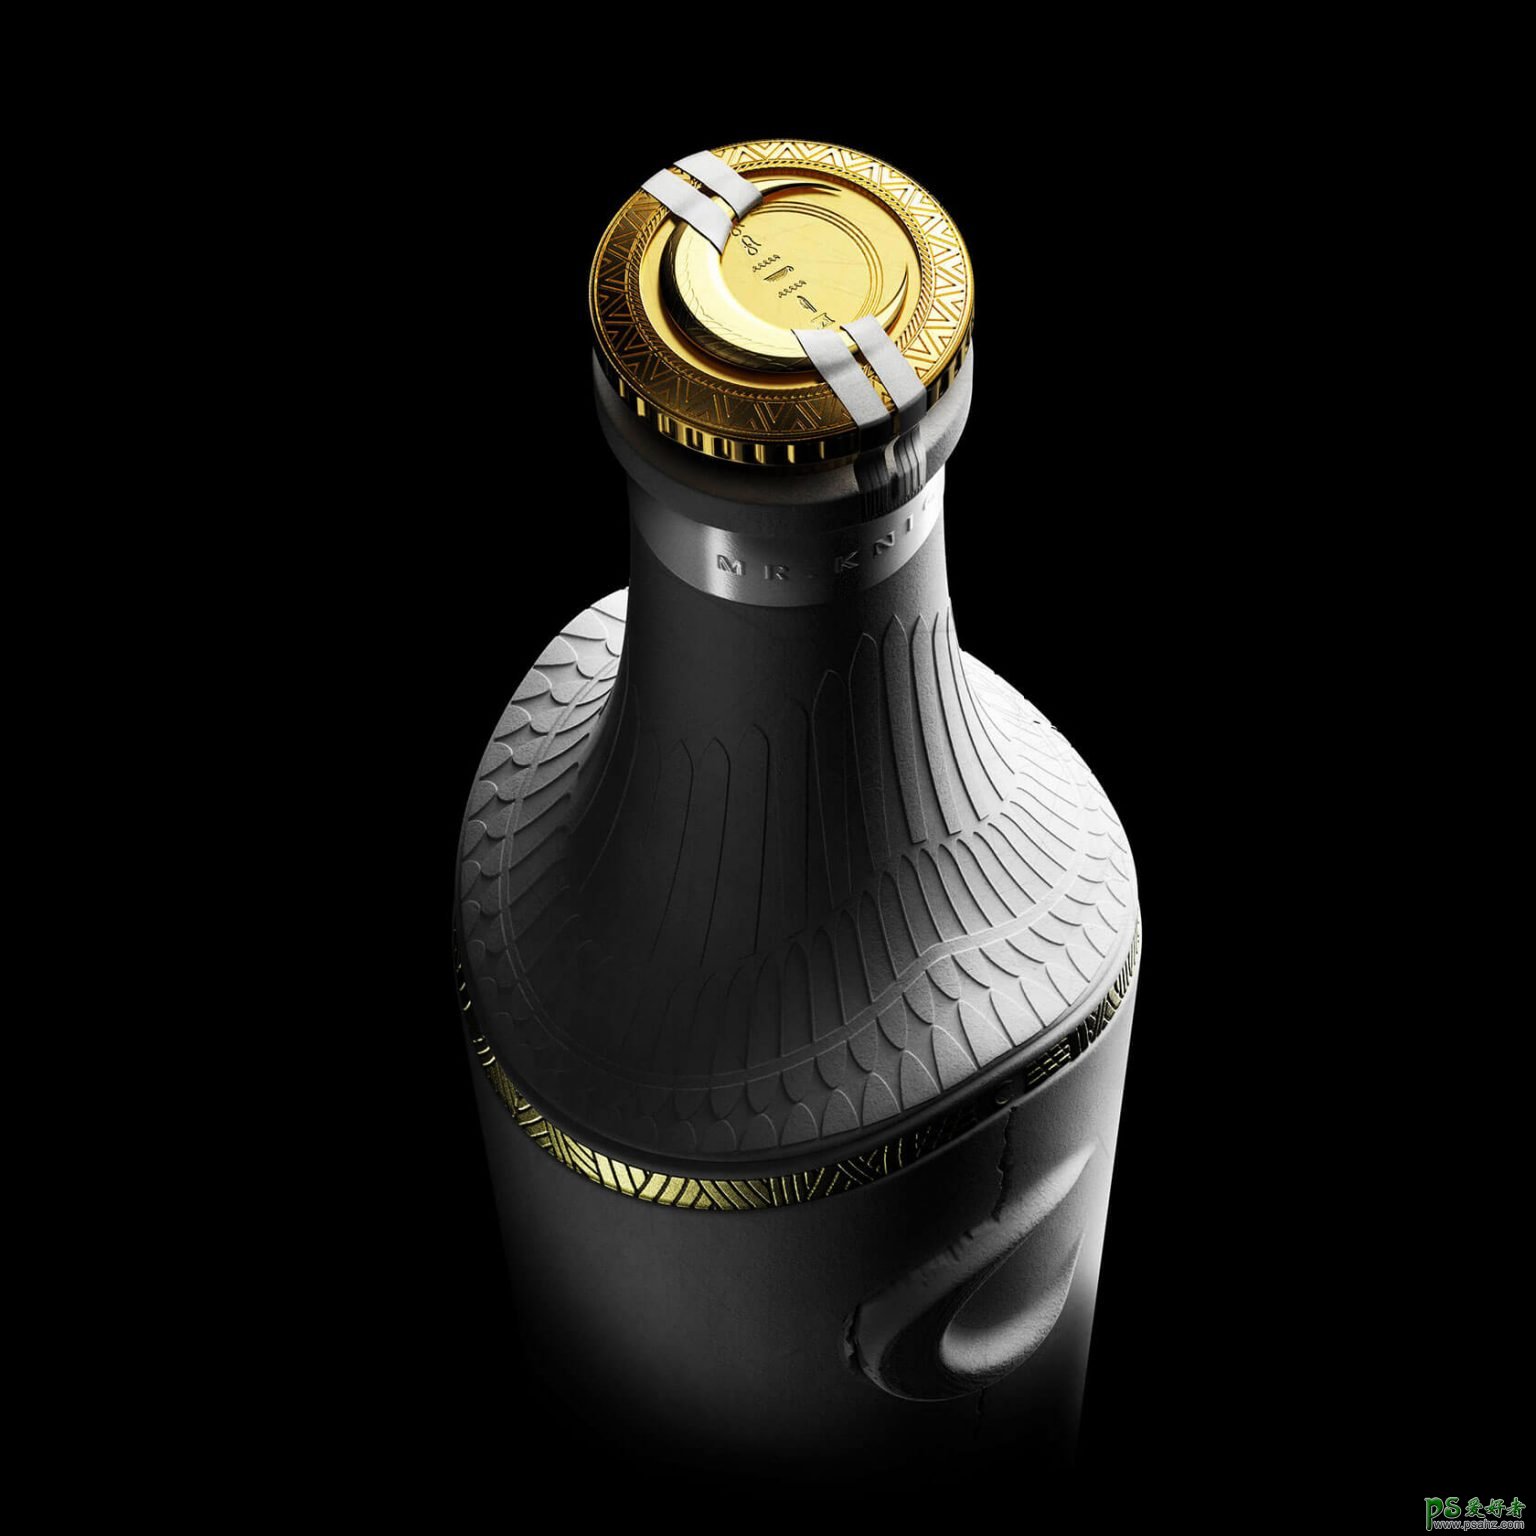 英国创意机构高端酒瓶包装设计,精致、时尚、高端酒瓶设计。